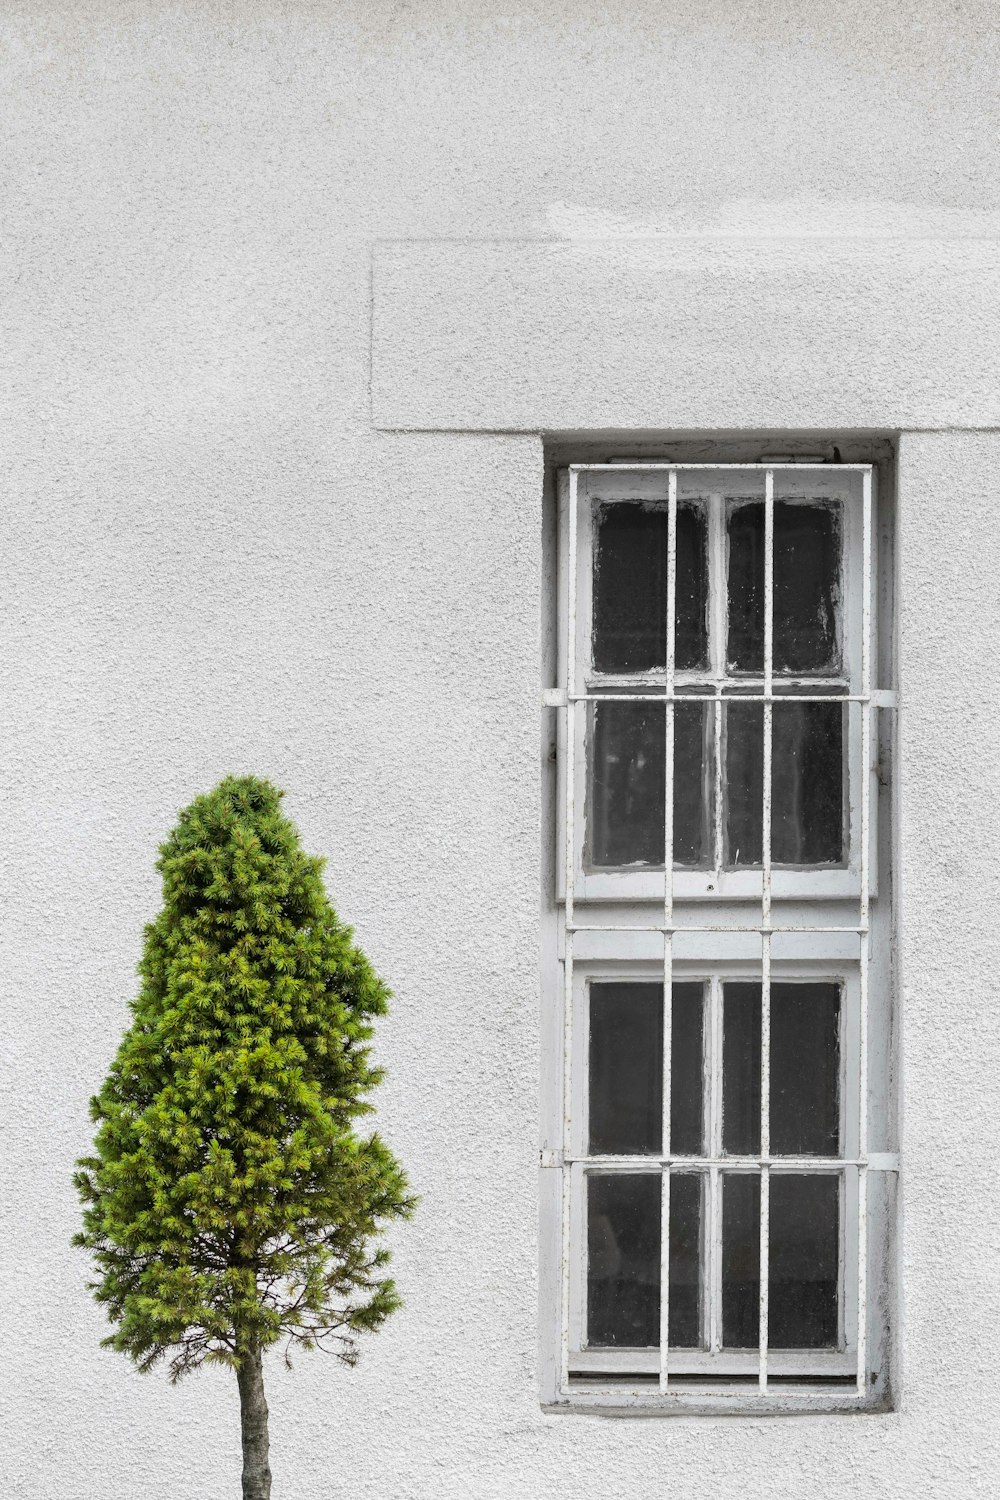 Albero foglia verde davanti al muro di cemento grigio